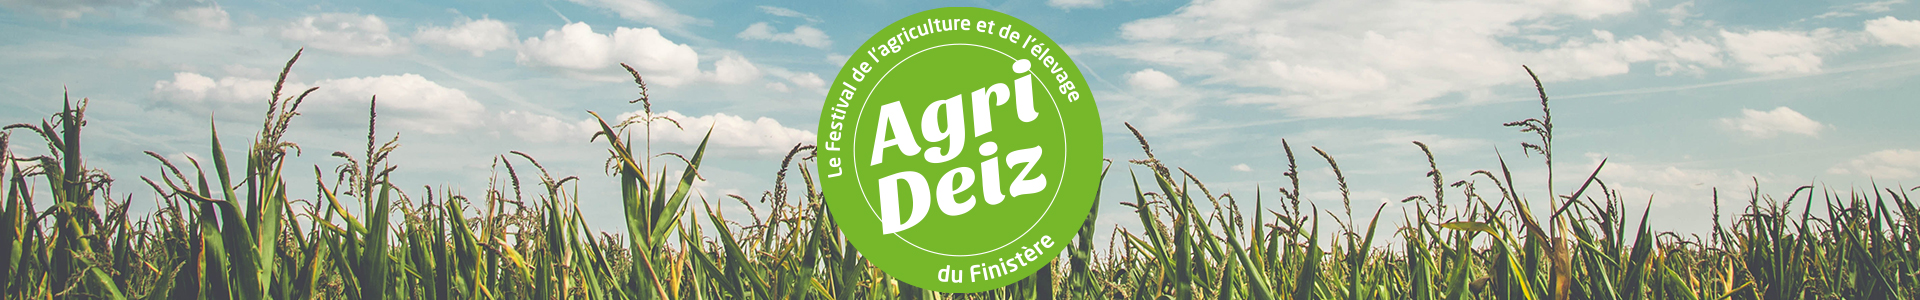 AGRI DEIZ – Festival de l'agriculture et de l'élevage du Finistère